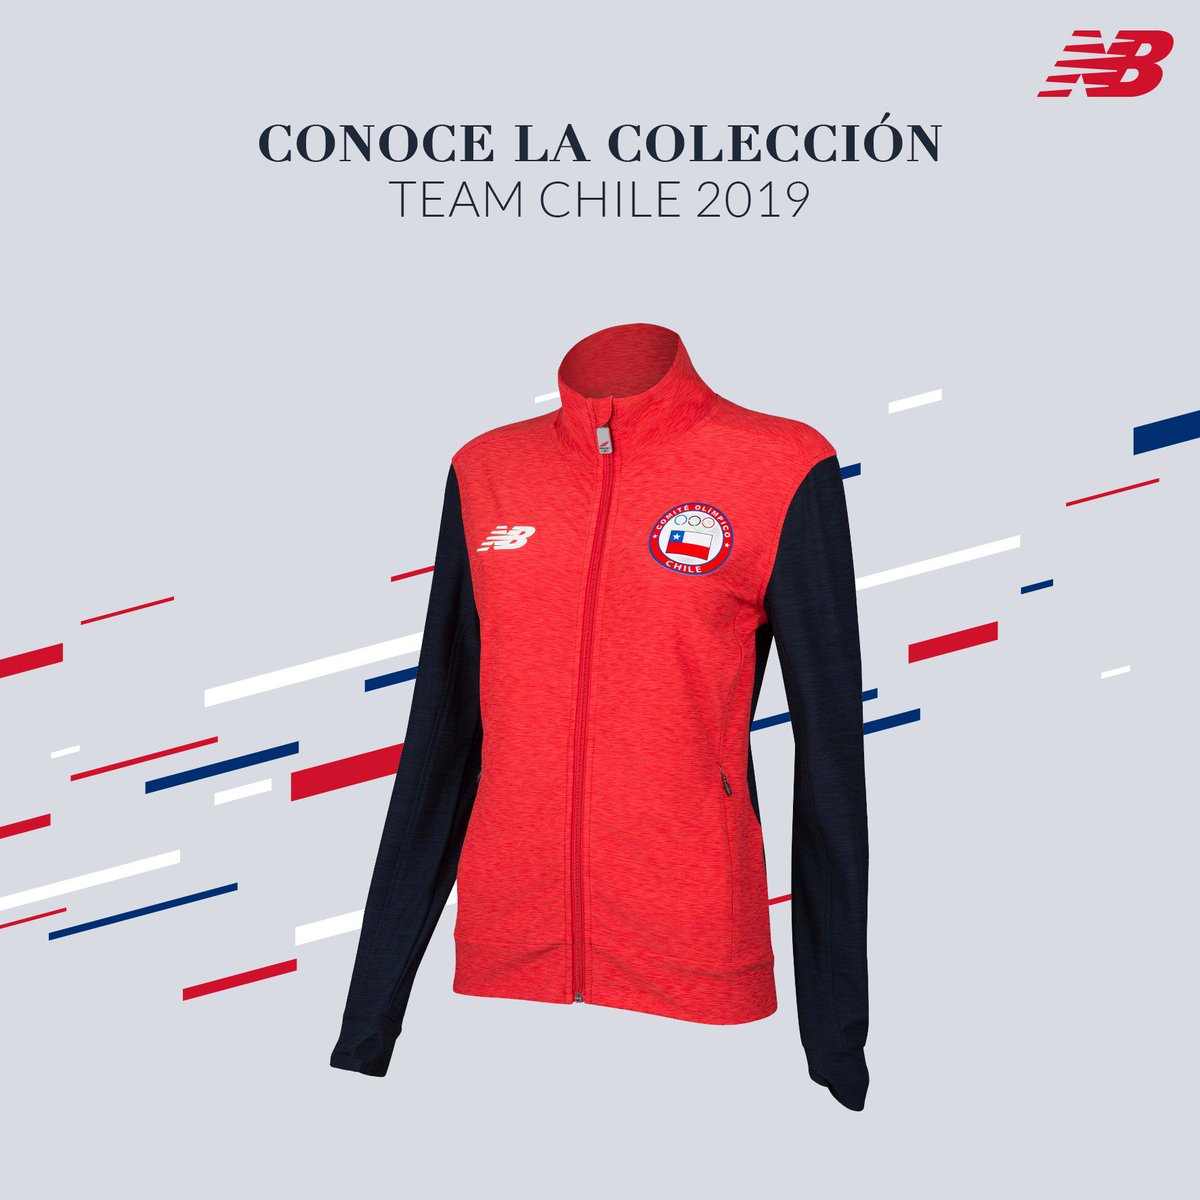 New Chile on Twitter: "Desde ya puedes encontrar la colección que utilizará el Team Chile en los Juegos Panamericanos Lima 2019. Búscala en nuestras tiendas y en https://t.co/i0yutYbRB5 https://t.co/ttAaRYdCsp" /